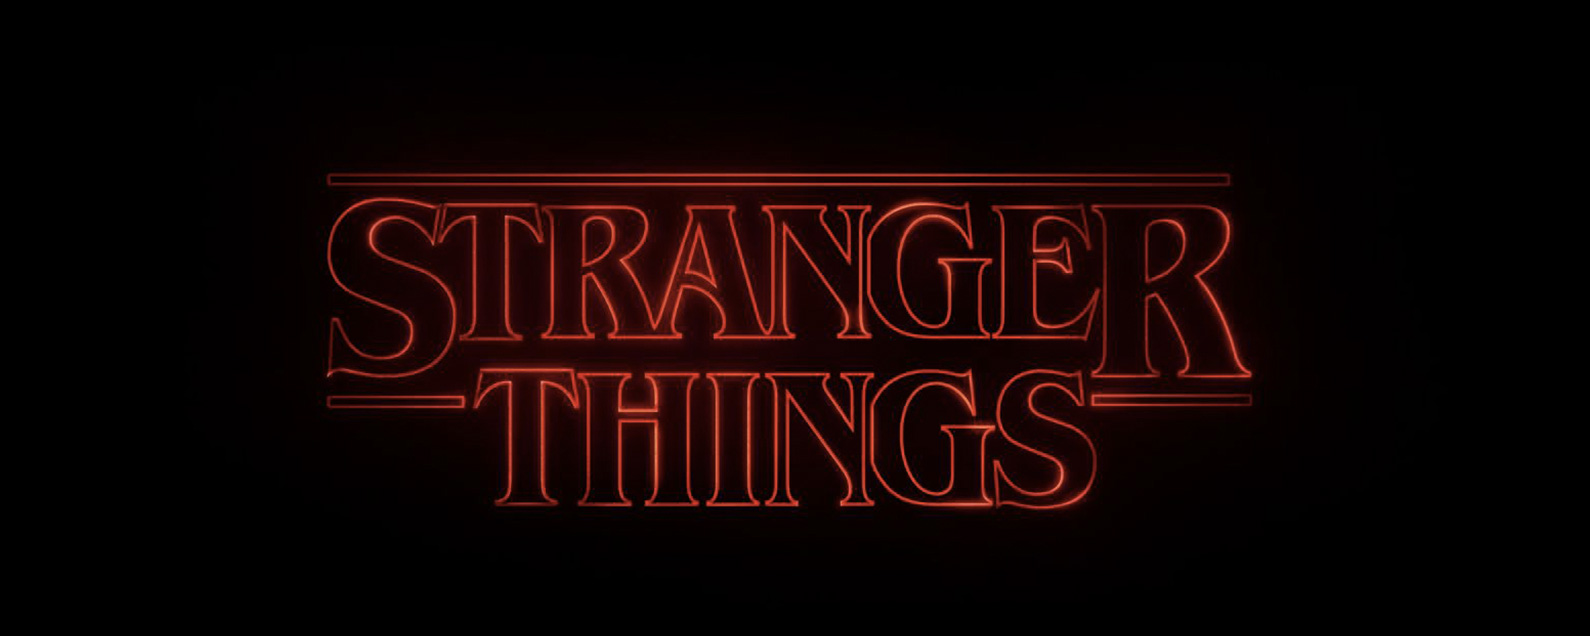 watch stranger things season 2 free